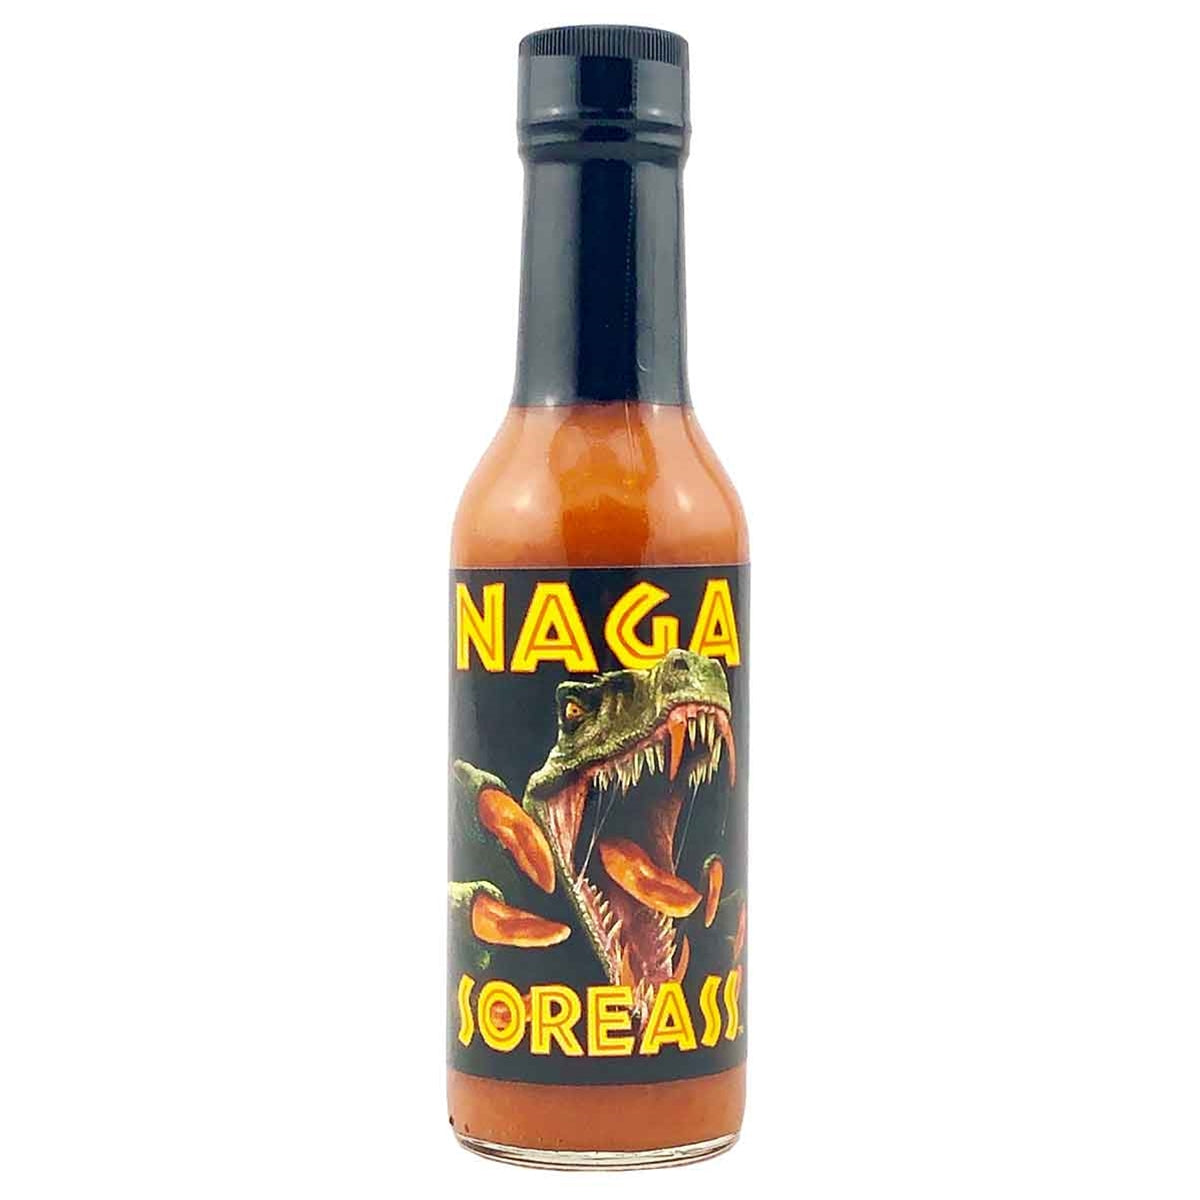 Cajohn's Nagasoreass Hot Sauce